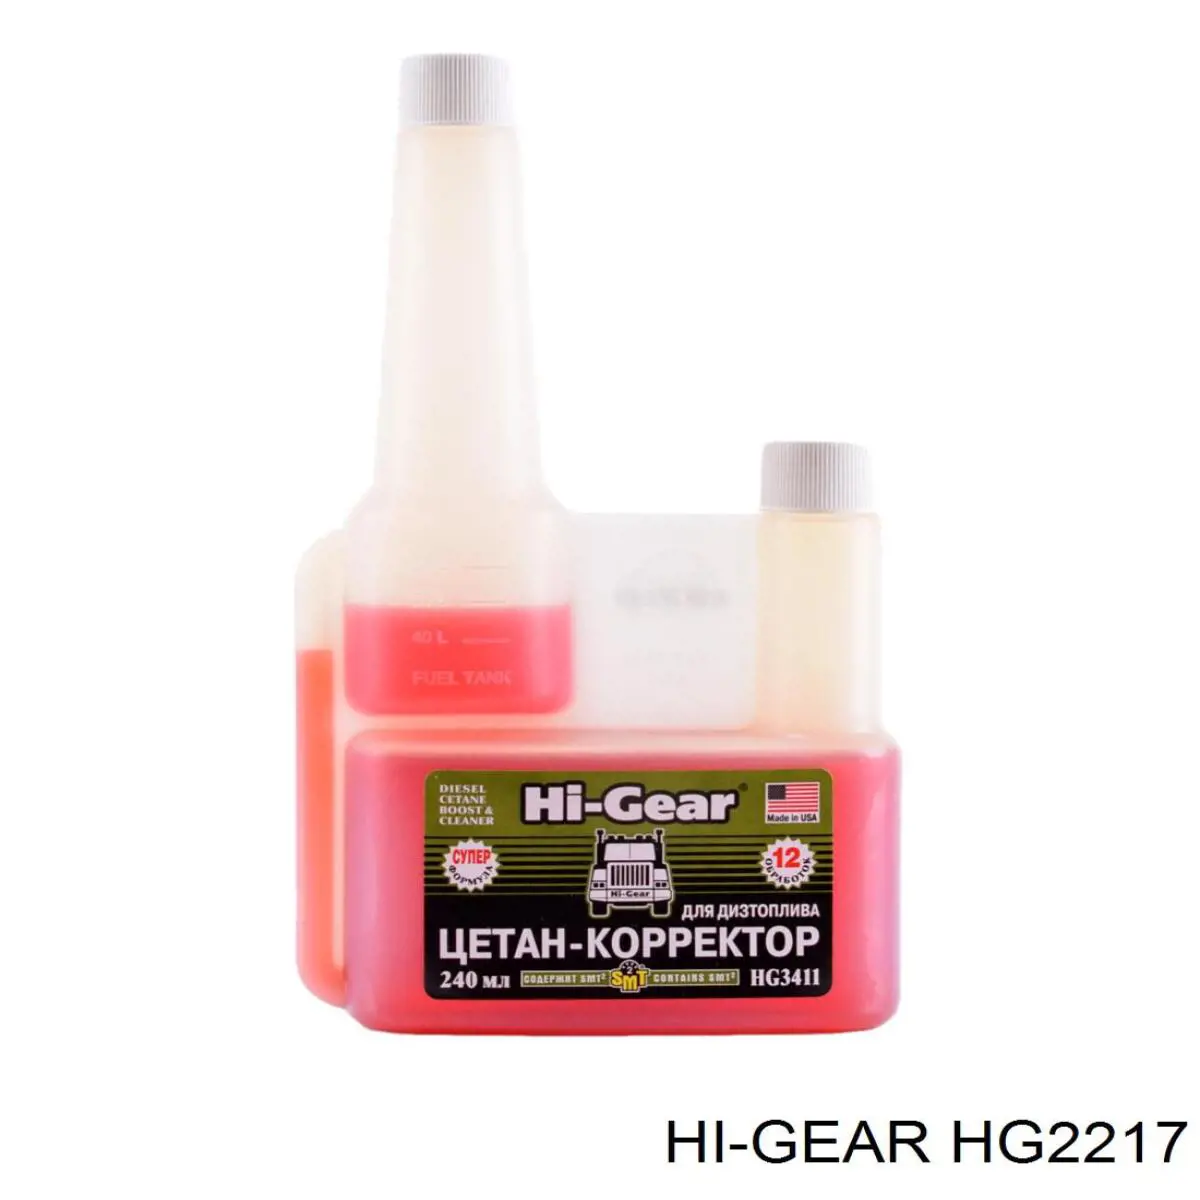 HG2217 HI-Gear очиститель масляной системы Очистители масляной системы, 1.444л